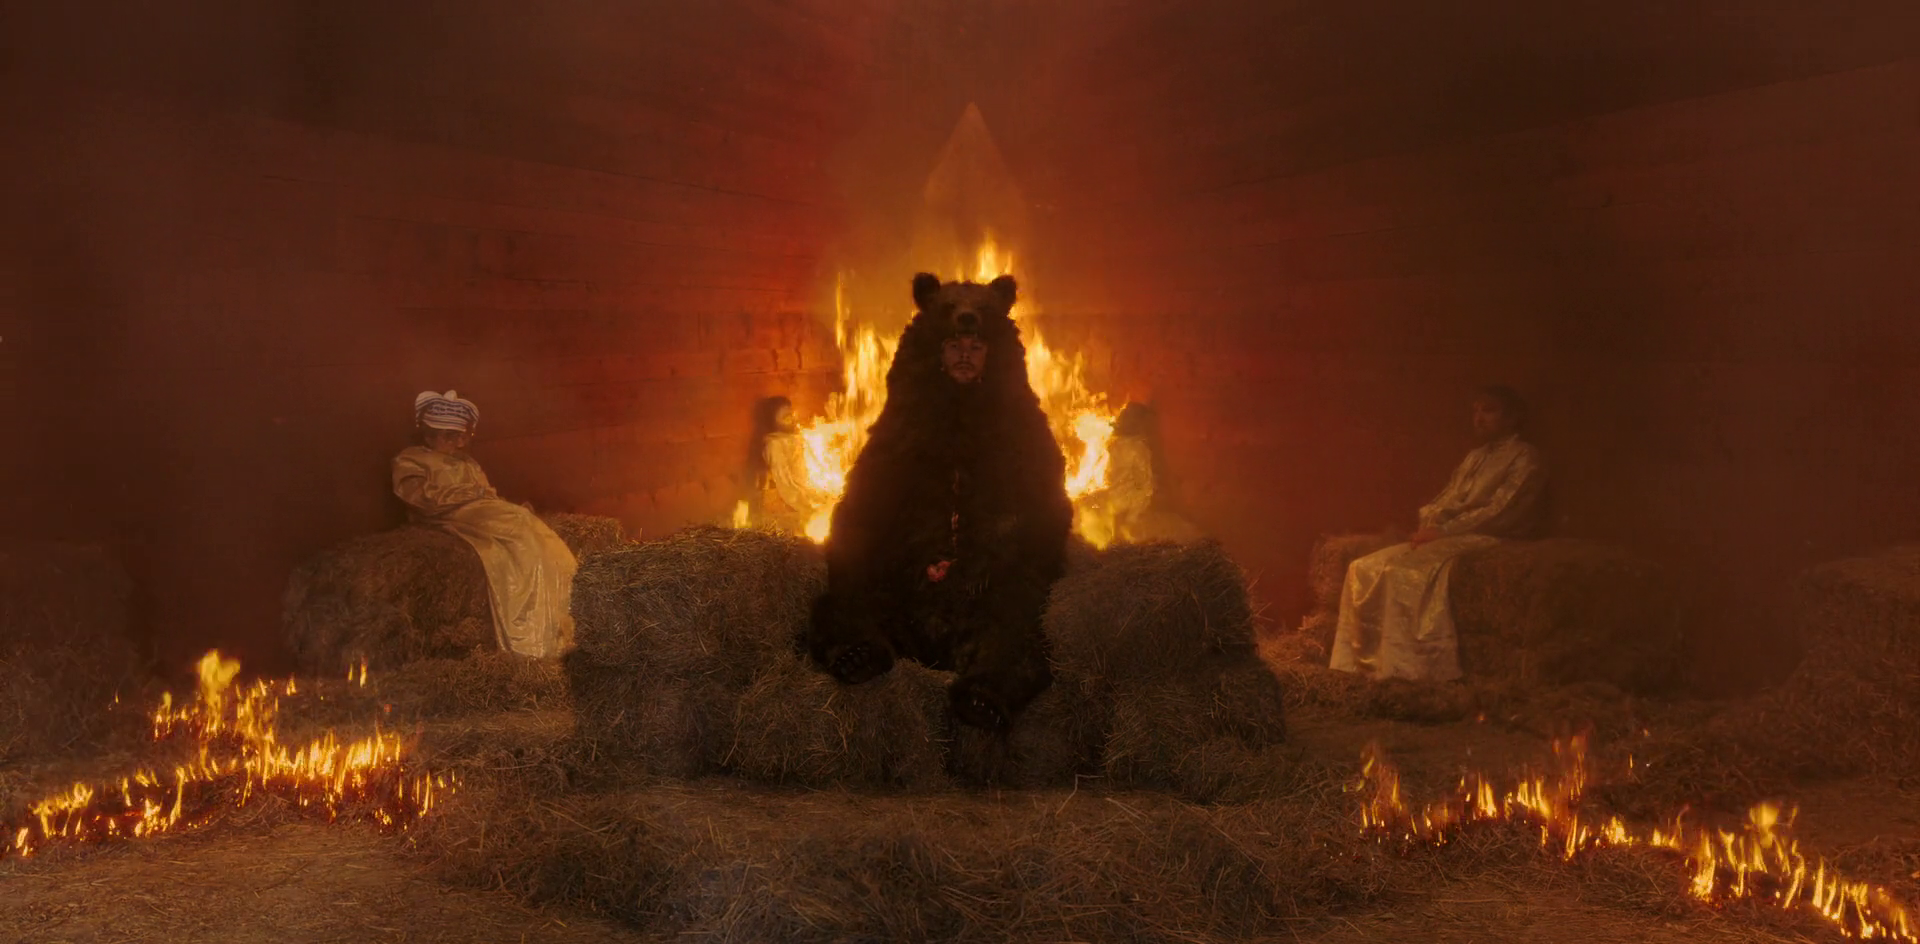 Christian dentro de uma pele de urso dentro de uma casa pegando fogo